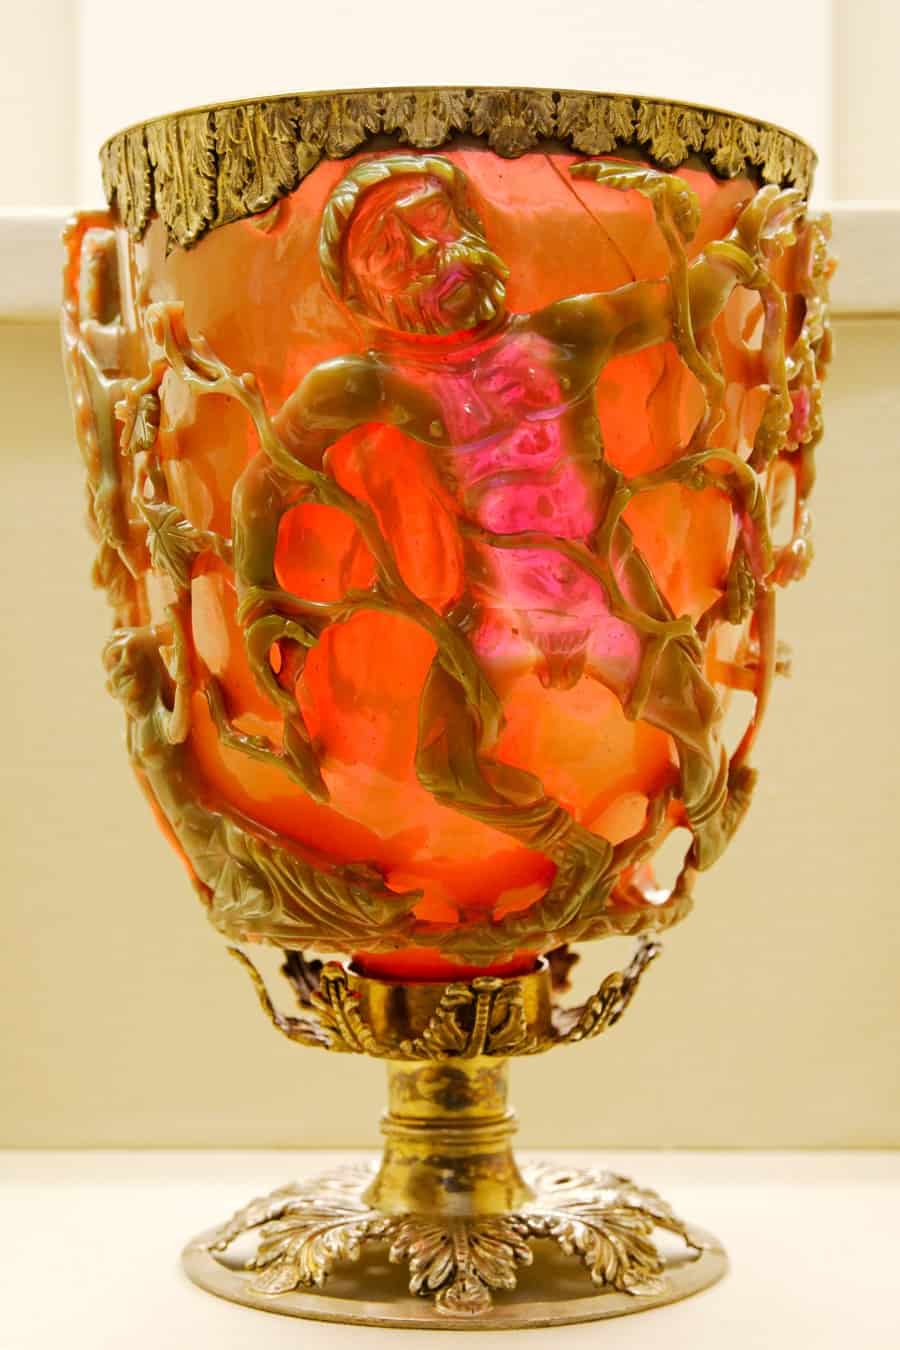 كأس (ليكرجوس) في زجاج مزدوج اللون (متغير اللون)، يشع الكأس هنا باللون الأحمر لأن الضوء يسطع على سطحه من الخلف.